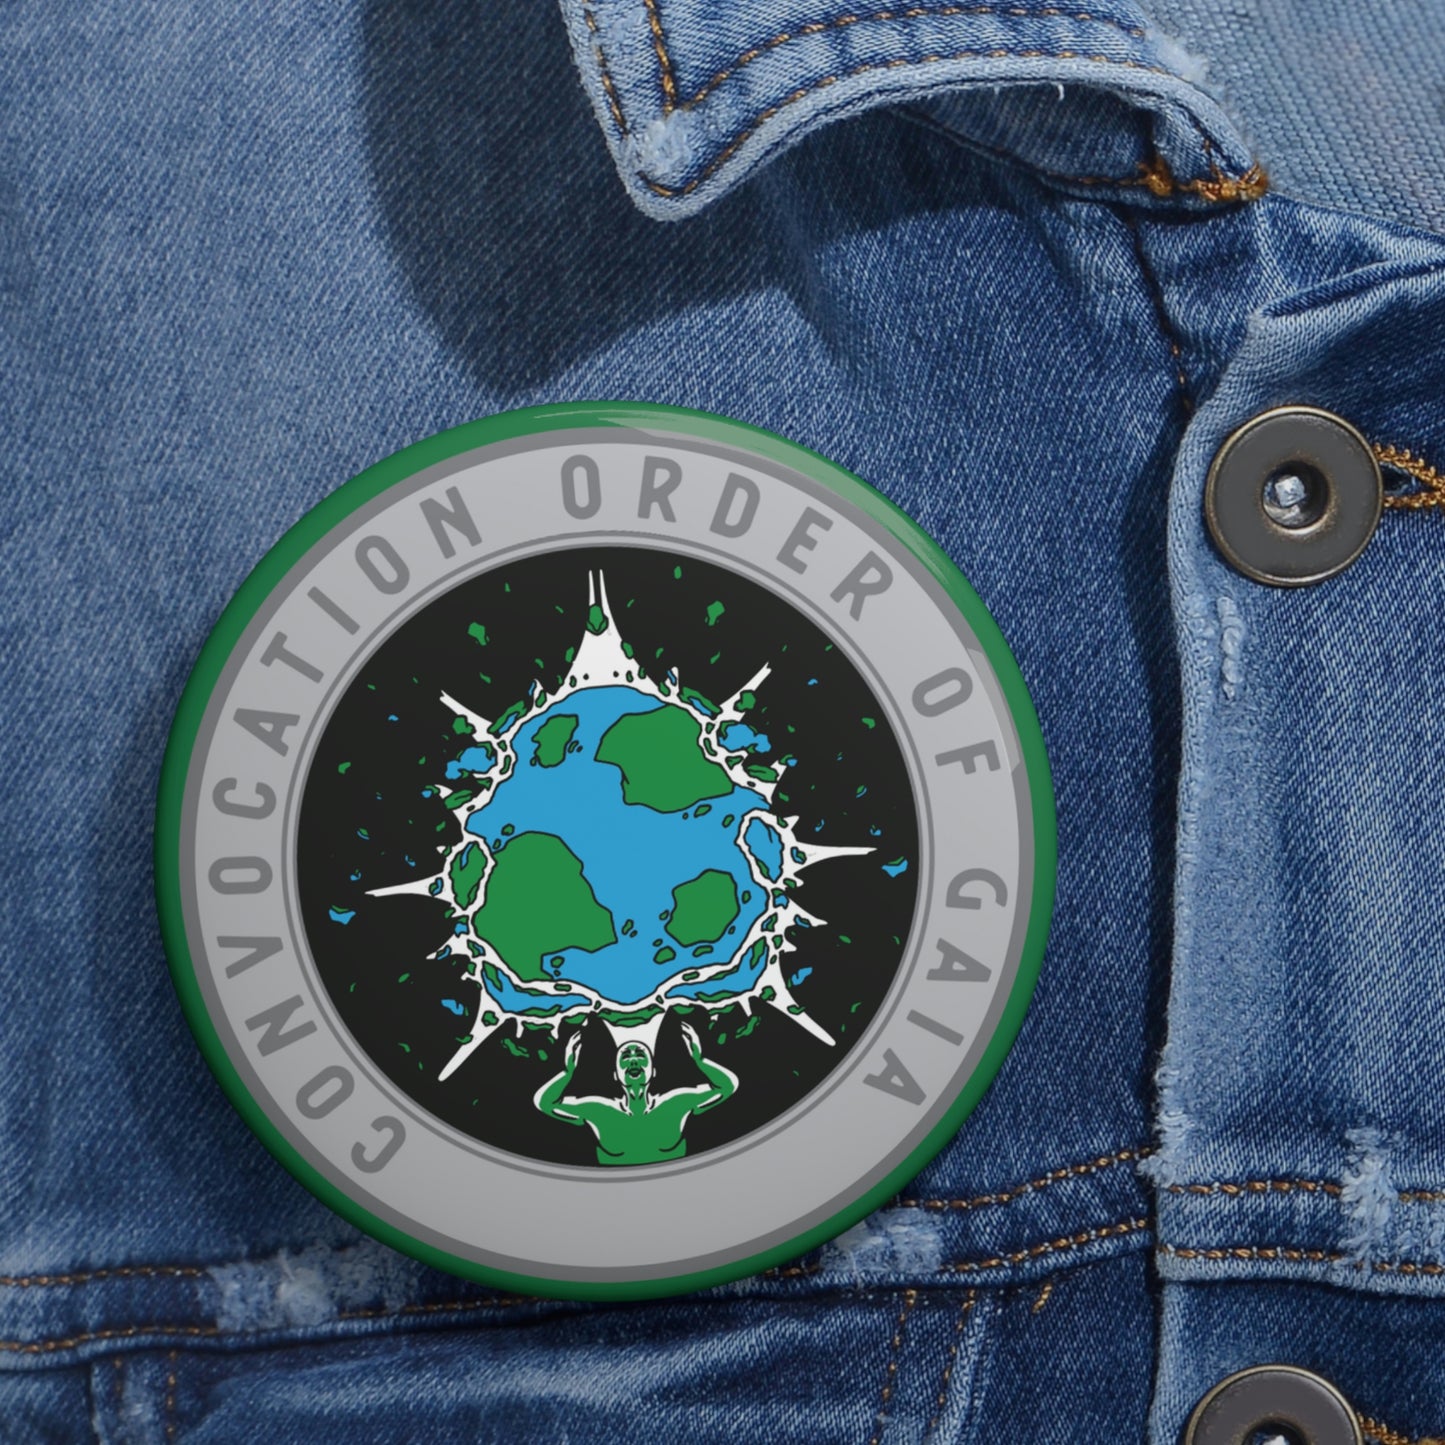 Black Ocean: Order of Gaia pin button